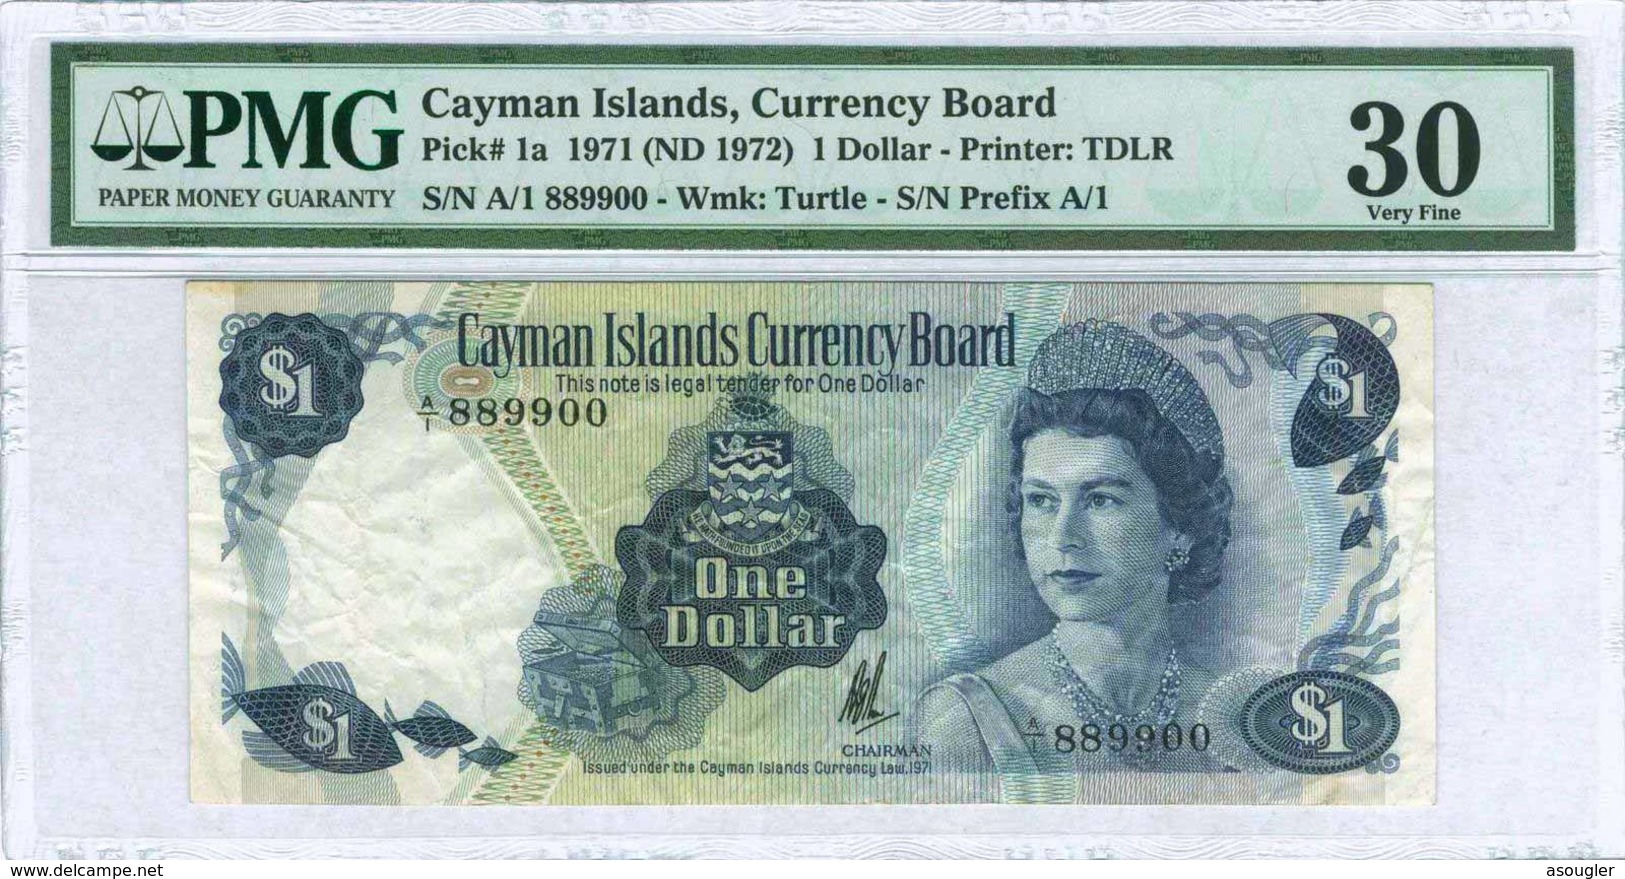 Cayman Islands - CAYMAN ISLANDS 1 DOLLAR L 1971 ND 1972 PMG 30 VF